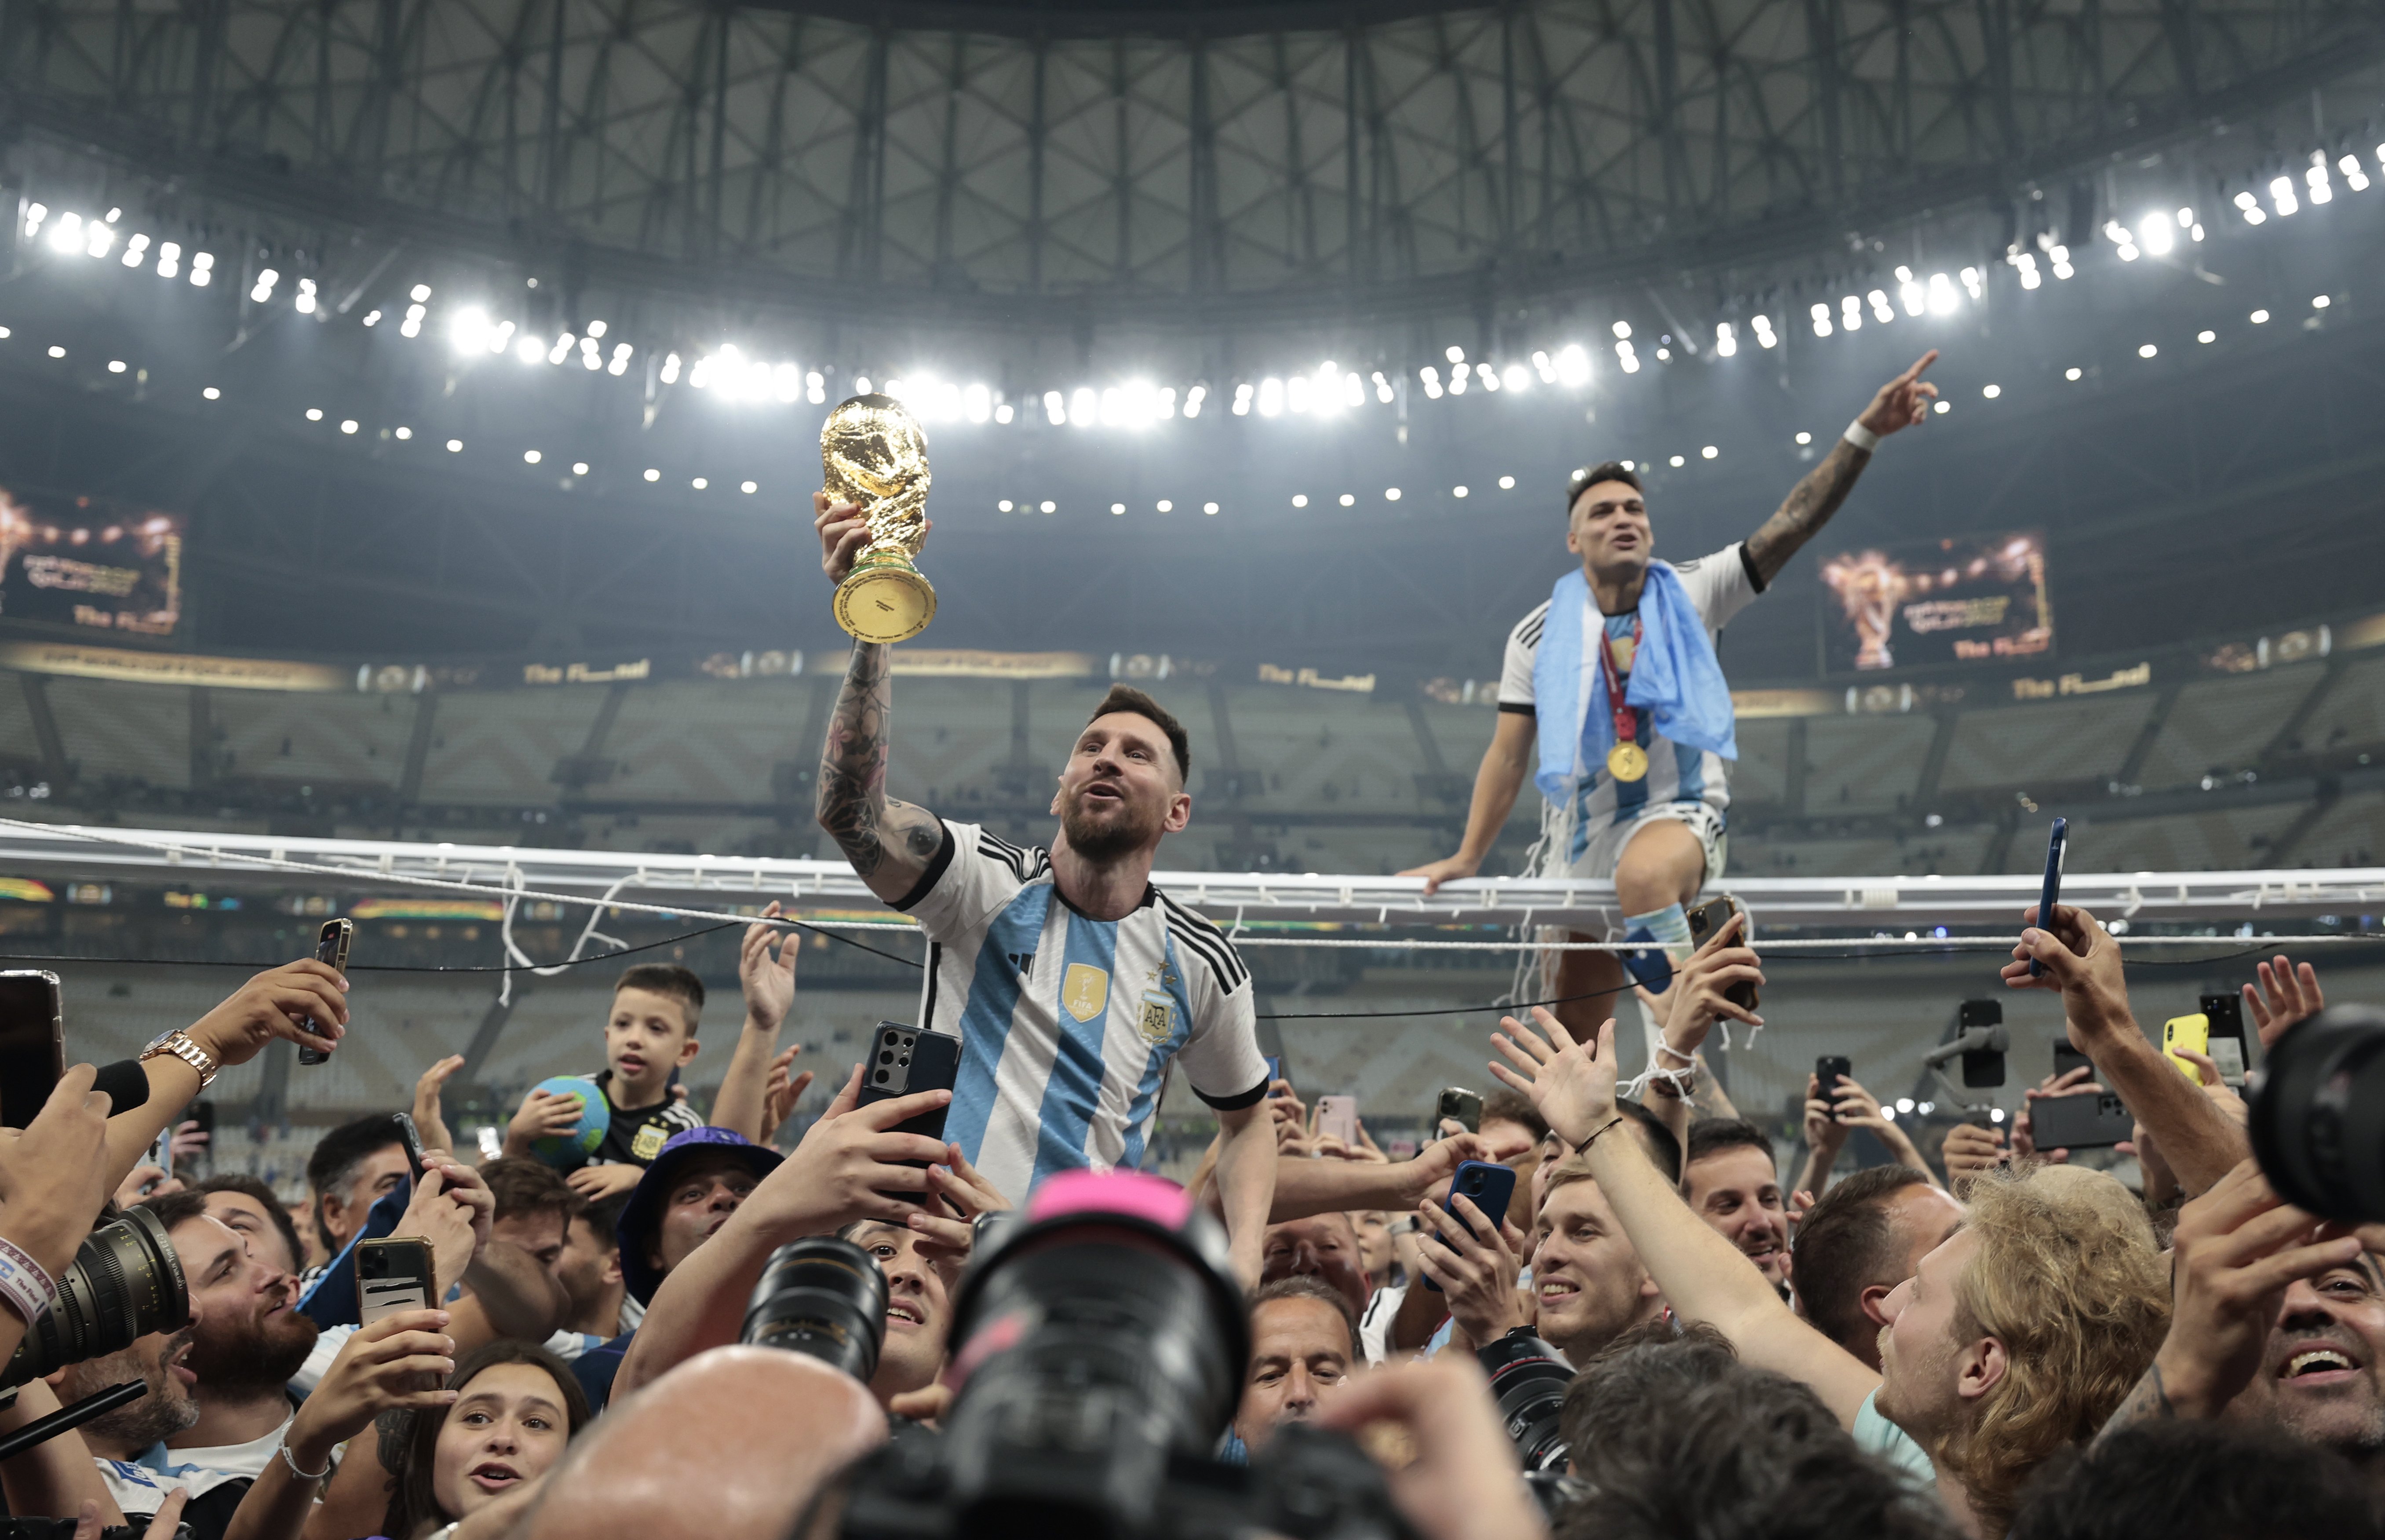 Clam unànime a les portades mundials: Leo Messi ja és el millor de la història del futbol